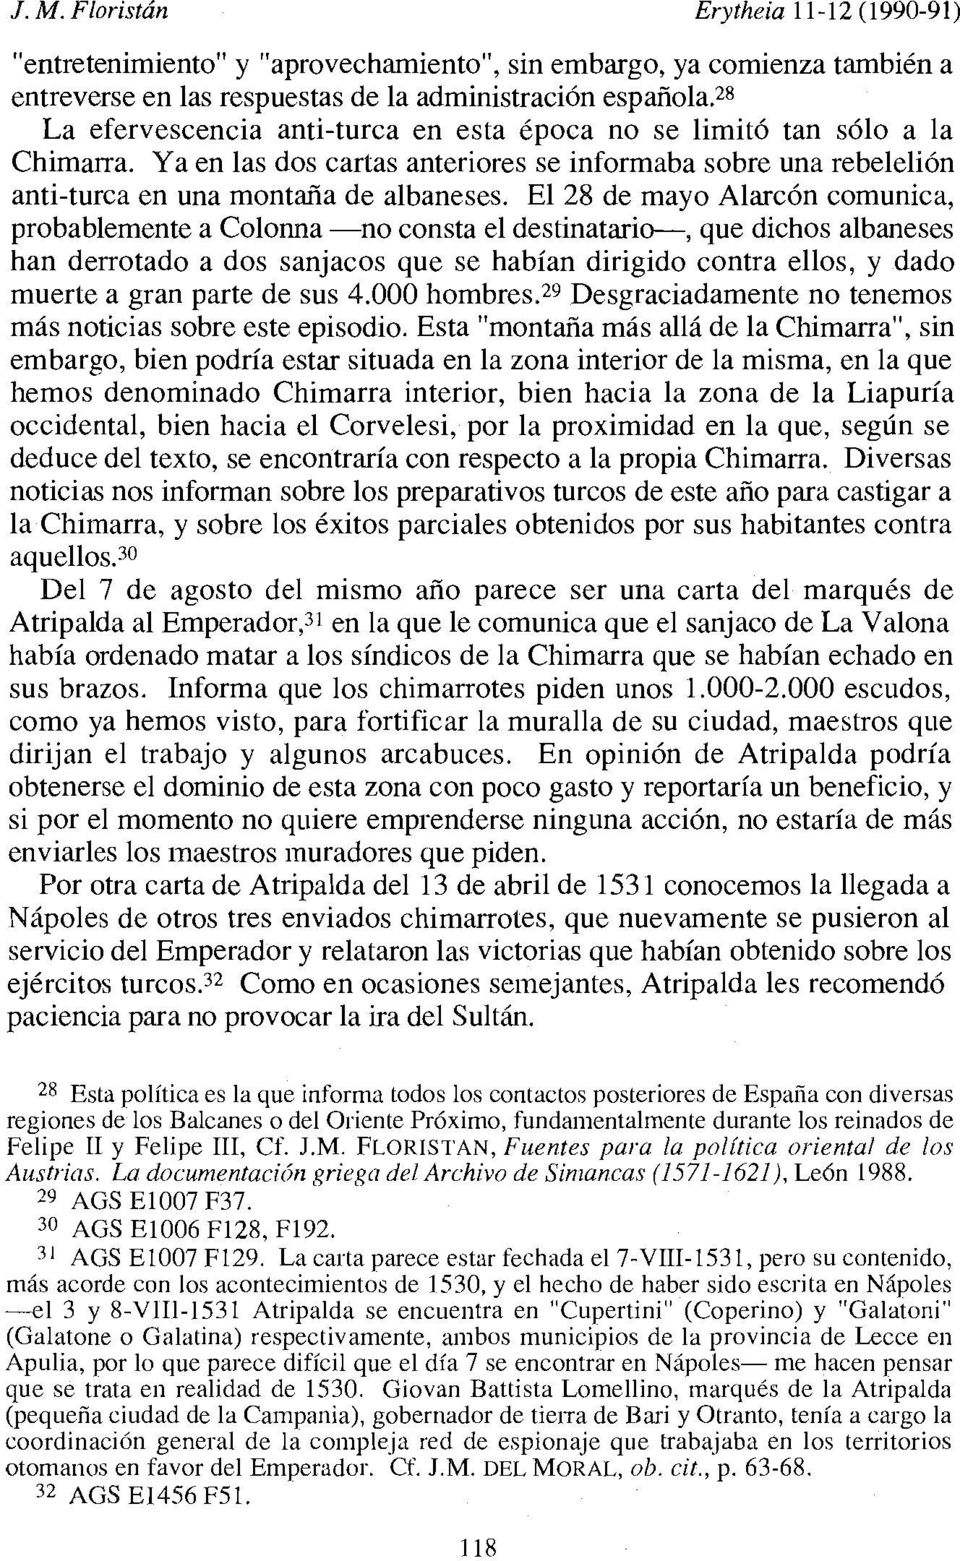 El 28 de mayo Alarcón comunica, probablemente a Colonna -no consta el destinatario-, que dichos albaneses han derrotado a dos sanjacos que se habían dirigido contra ellos, y dado muerte a gran parte